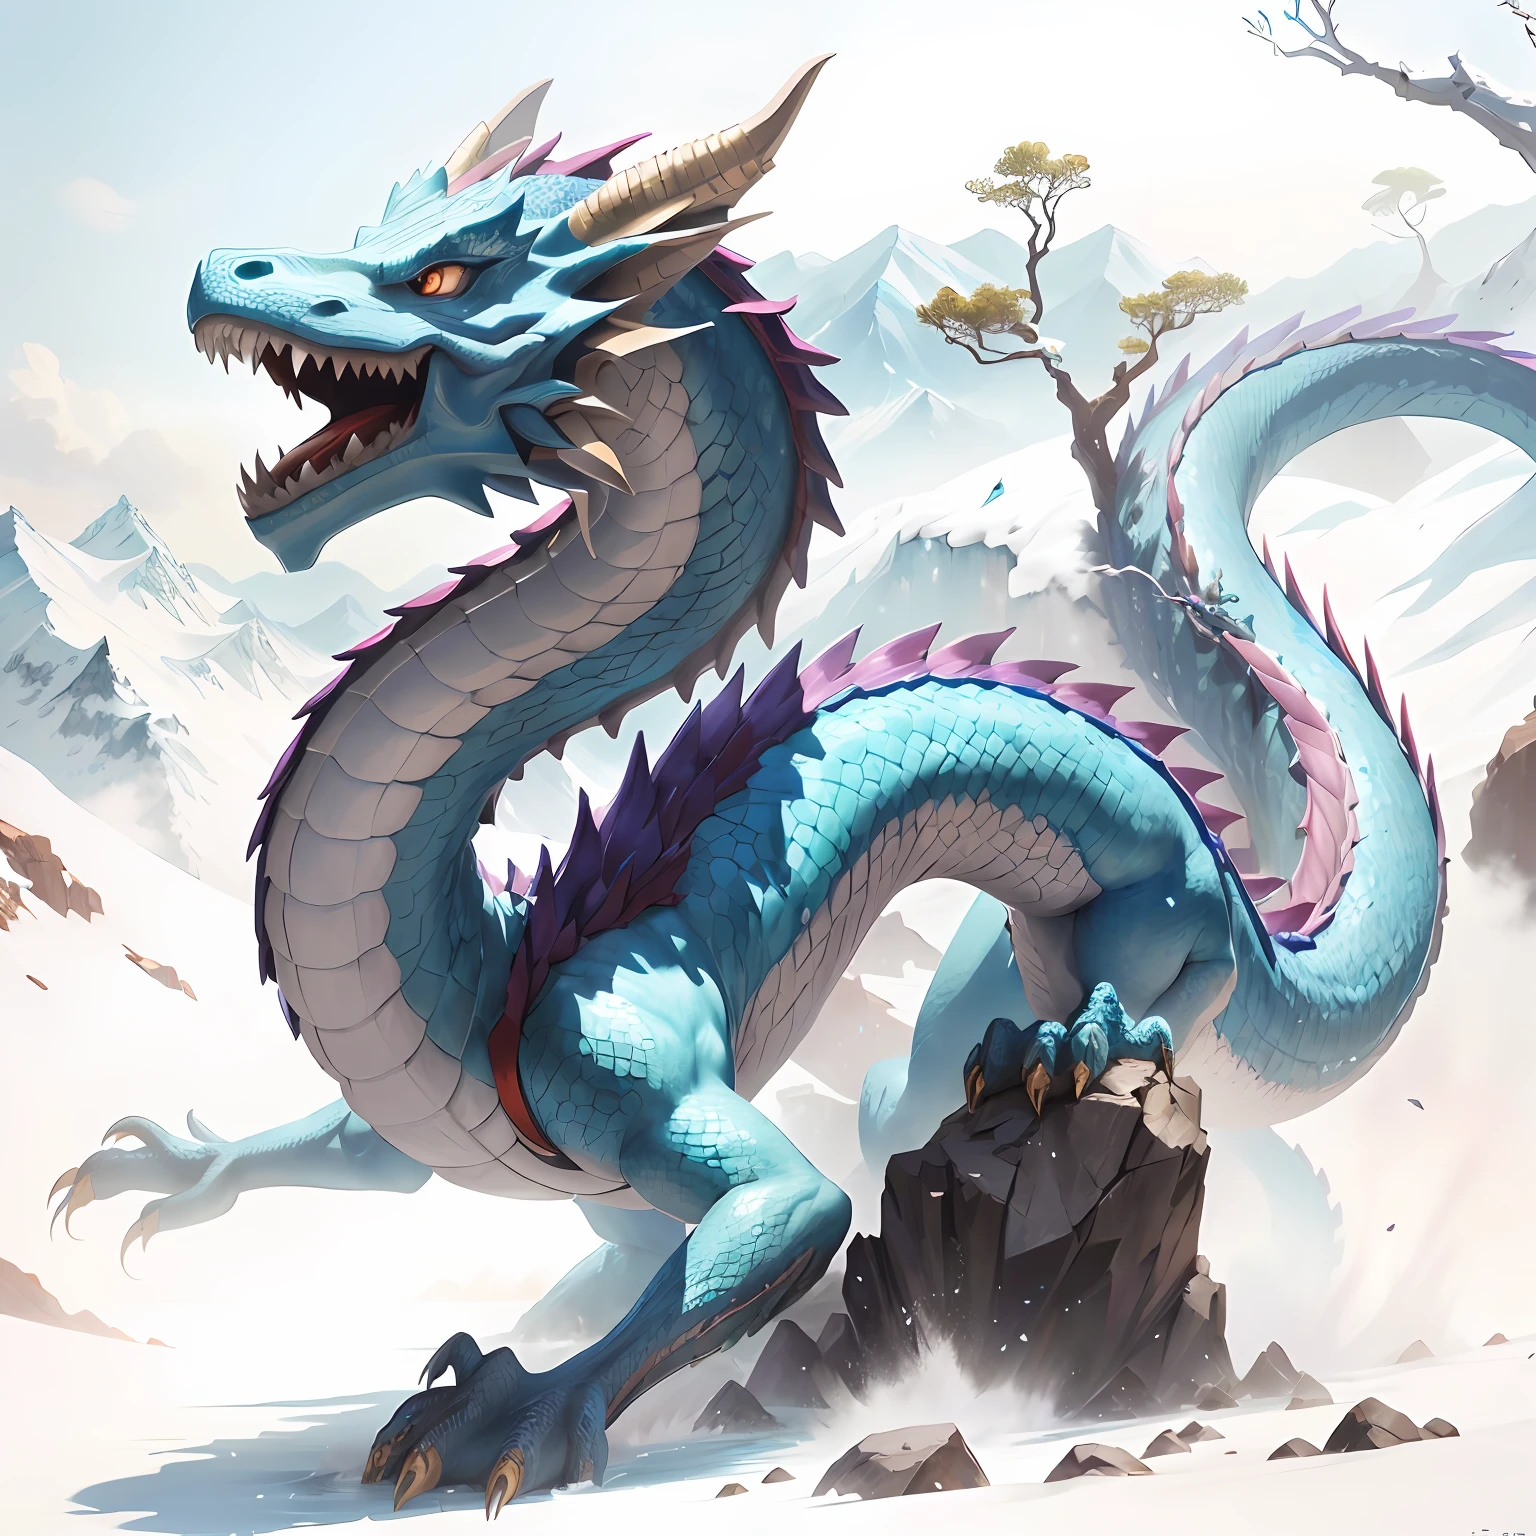 Hay un dragón azul parado sobre la roca., fantasía del dragón chino cian, Blue dragon, dragón de escarcha, arte conceptual del dragón chino, Dragón escamoso azul, arte del dragón, Dragon legendario, D&d comisión arte dragón, dragón chino liso, Dragon, dragón épico, Dragón de agua, Largo, Dragon, oil painting de dragon, bebió, Un majestuoso，a dragon， vistoso， picos de las montañas， cascada， baiyun， obra maestra， La mejor calidad en el mejor de los casos.， el es muy detallado， finamente detallado， defcial art， Fondo de pantalla de unidad 8k， 4k，8k，uhd， muy detallado， bdifuminarry， difuminarry_fondo， difuminarry_Primer plano，profundidad_de_campo，movimiento_difuminar，（siendo realista，fotorrealista：1），el dragón dorado，Blue scales， --auto